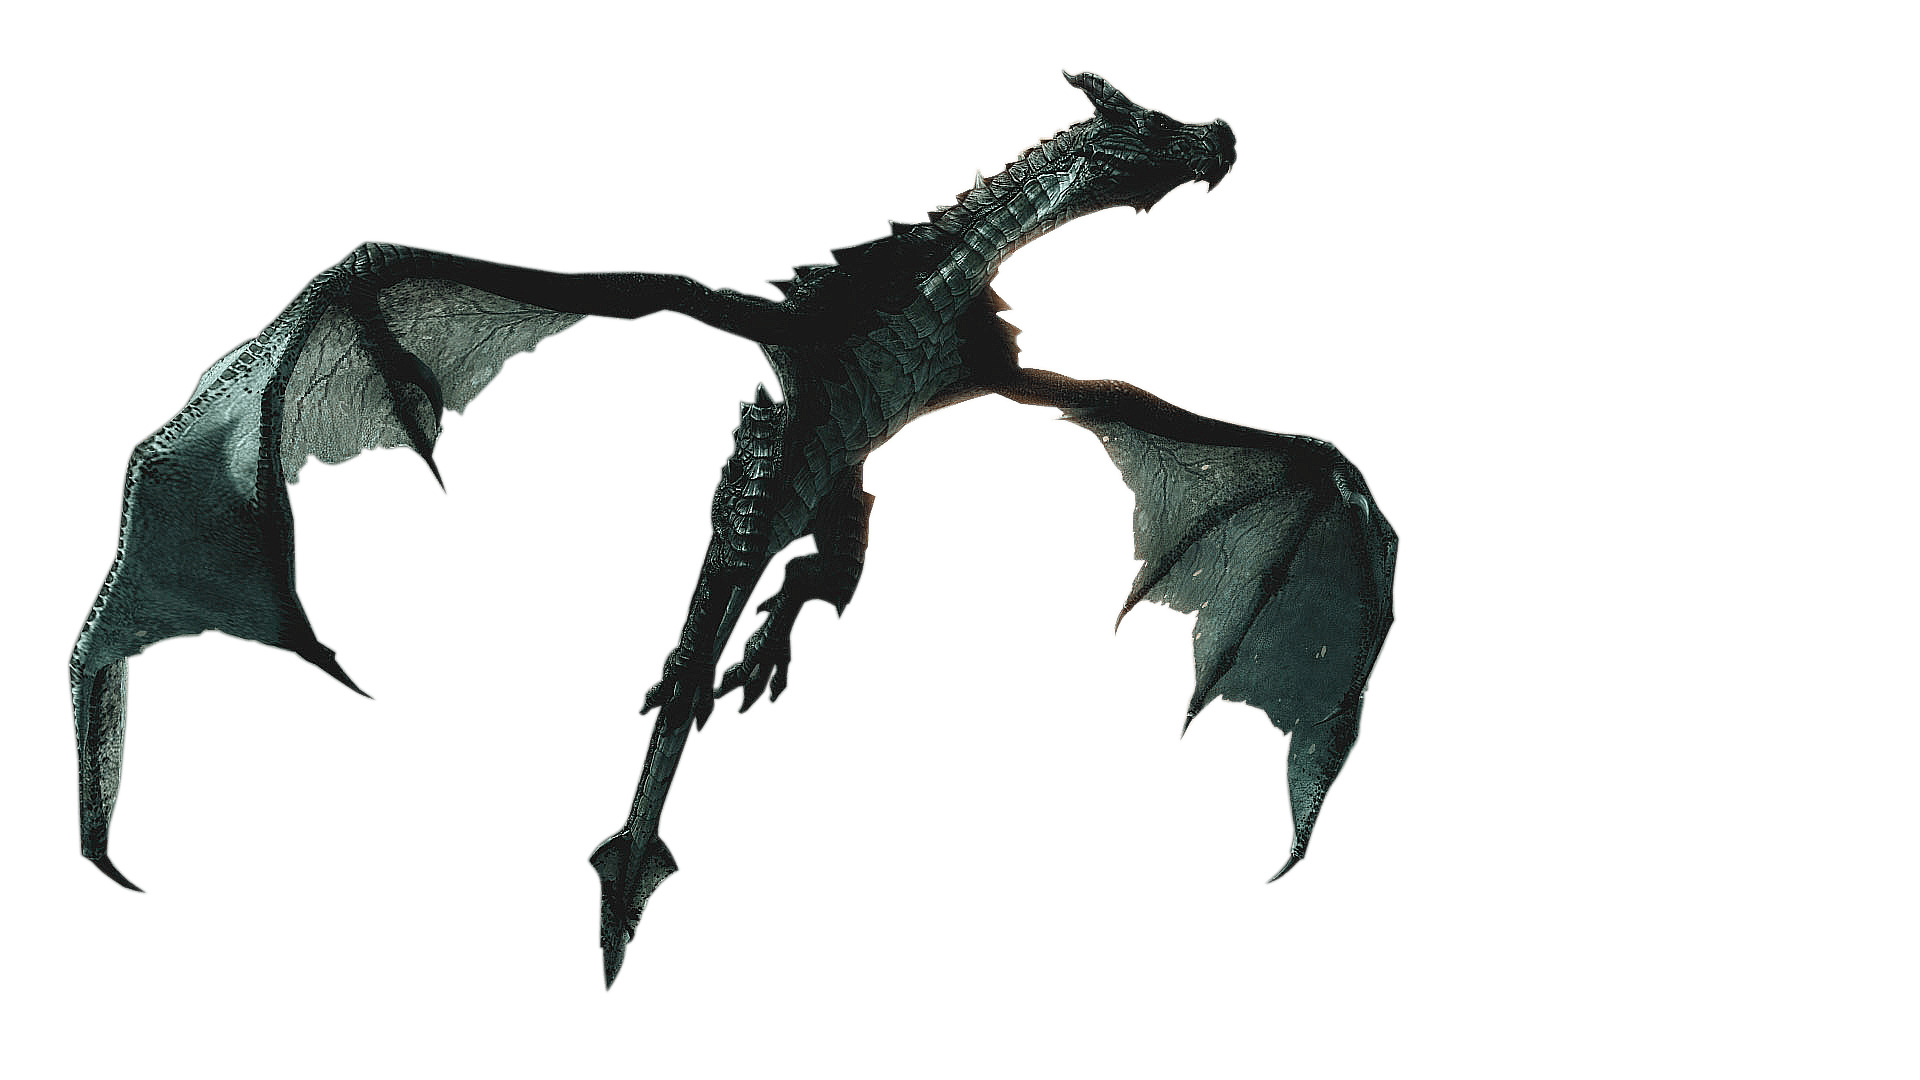 Elder Scrolls Skyrim Flying Dragon icons